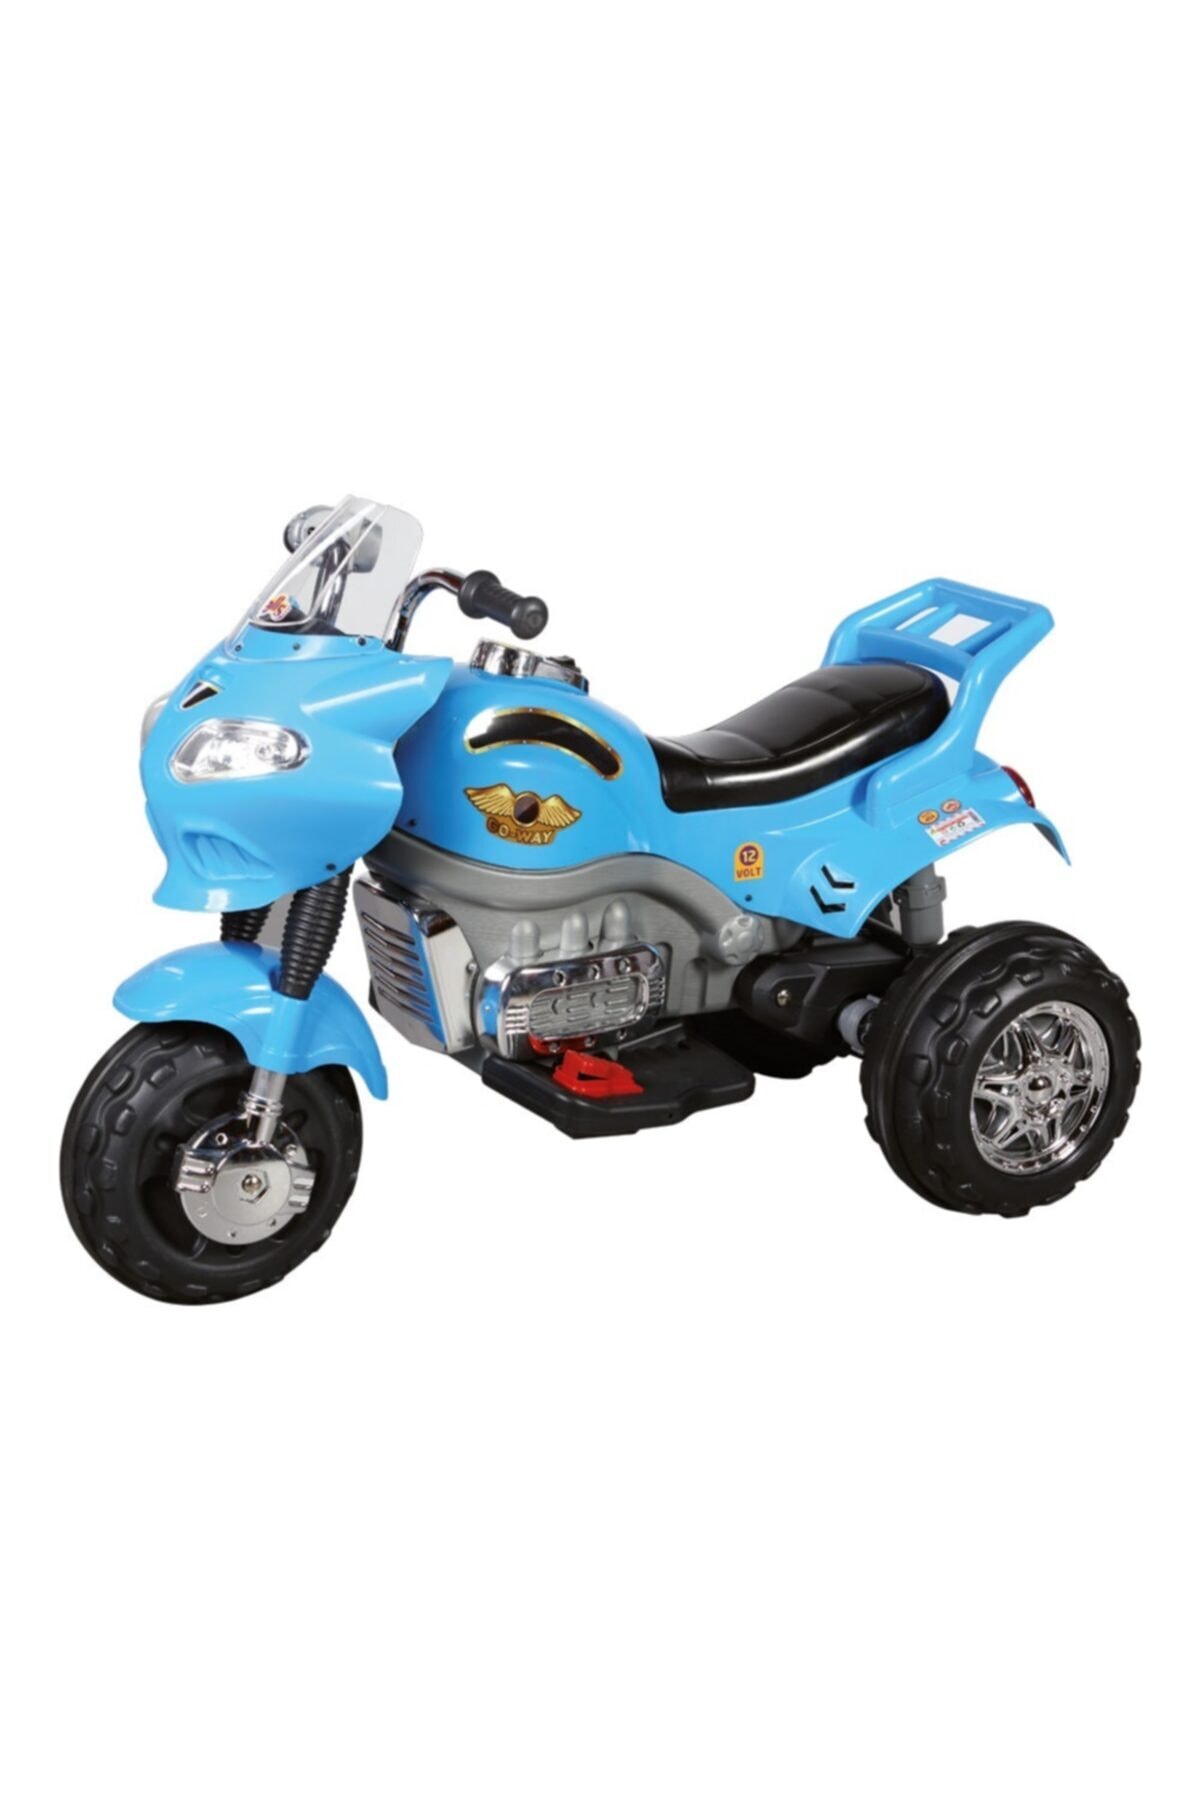 Aliş Toys Aliş 404 Go Way 12 Volt Turbo Akülü Atv & Motorsiklet